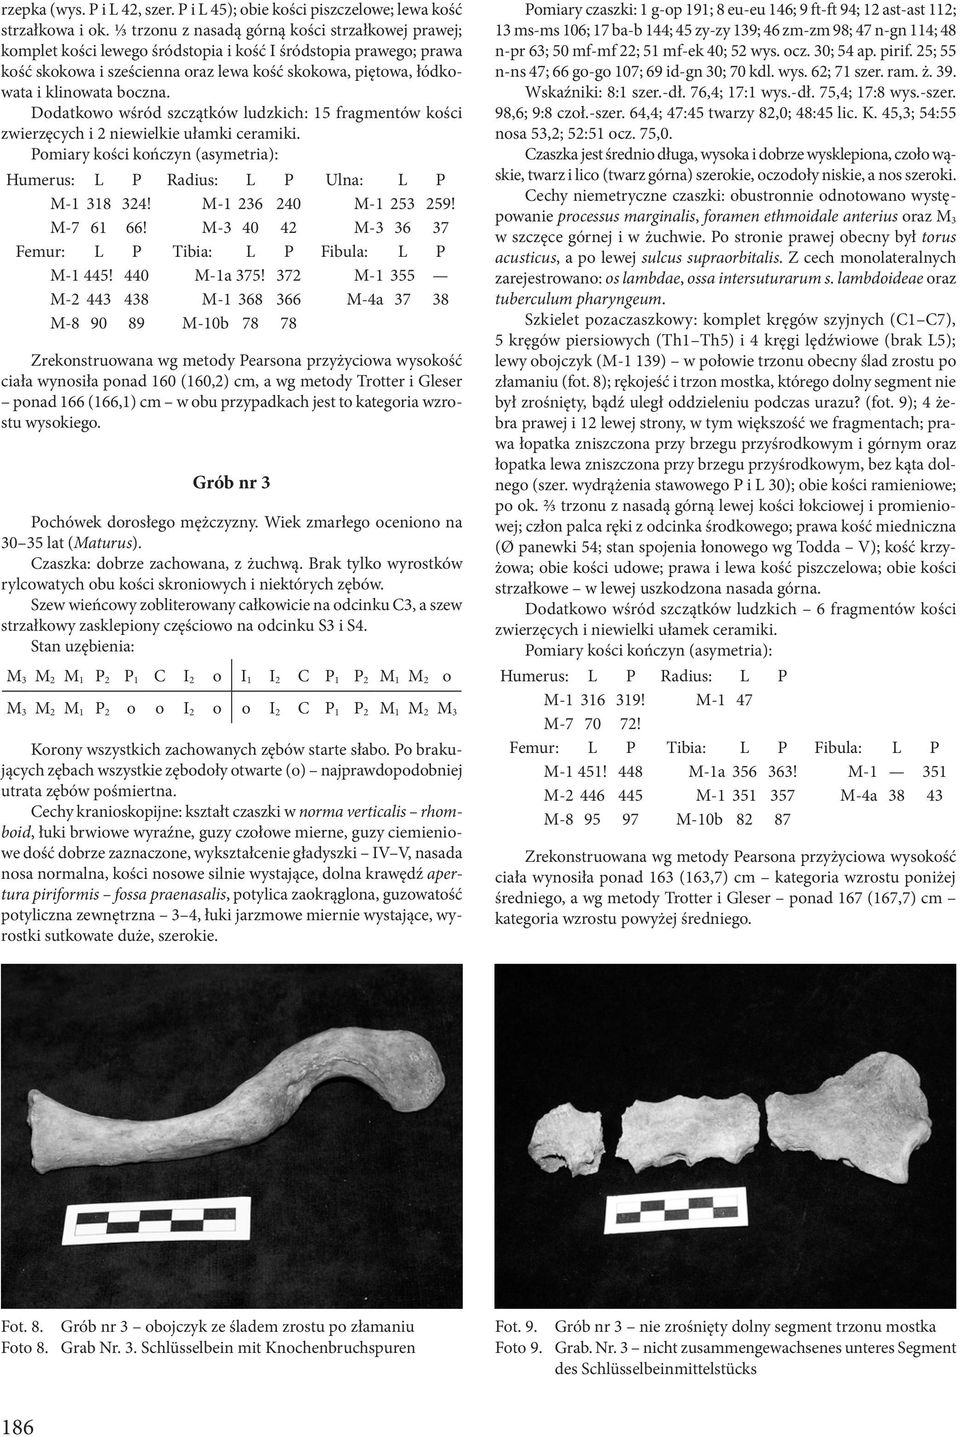 boczna. Dodatkowo wśród szczątków ludzkich: 15 fragmentów kości zwierzęcych i 2 niewielkie ułamki ceramiki. Pomiary kości kończyn (asymetria): Humerus: L P Radius: L P Ulna: L P M-1 318 324!